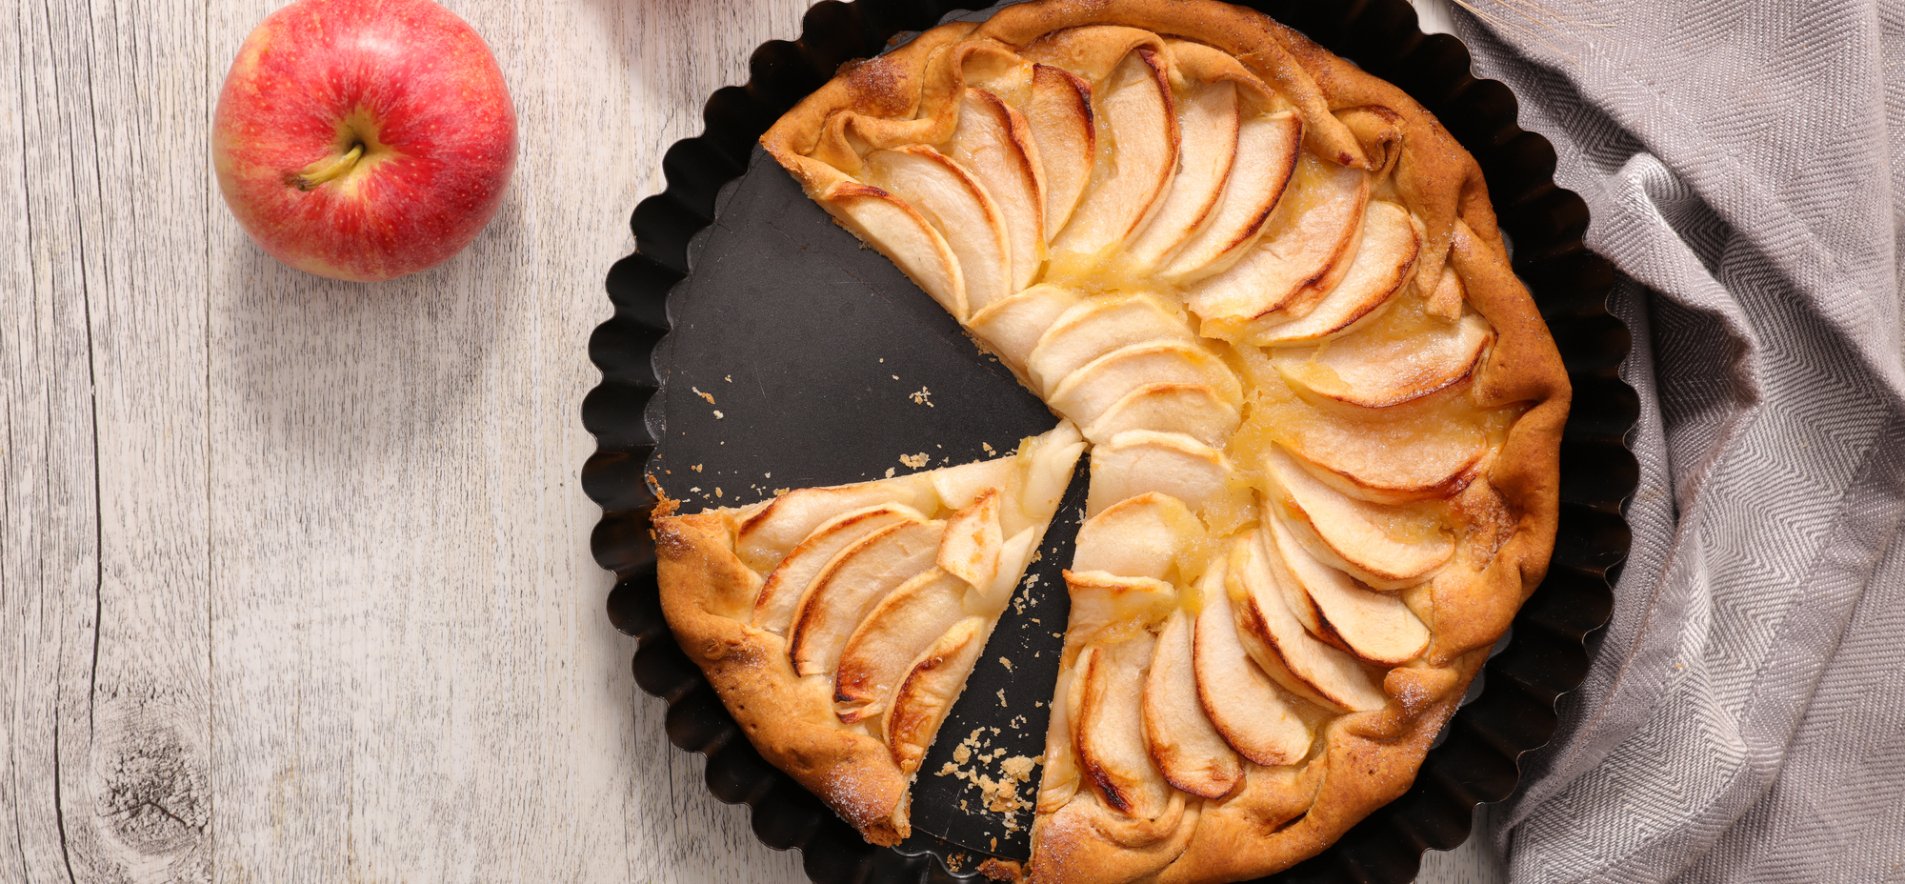 Пирог с яблоками (более рецептов с фото) - рецепты с фотографиями на Поварёslep-kostroma.ru